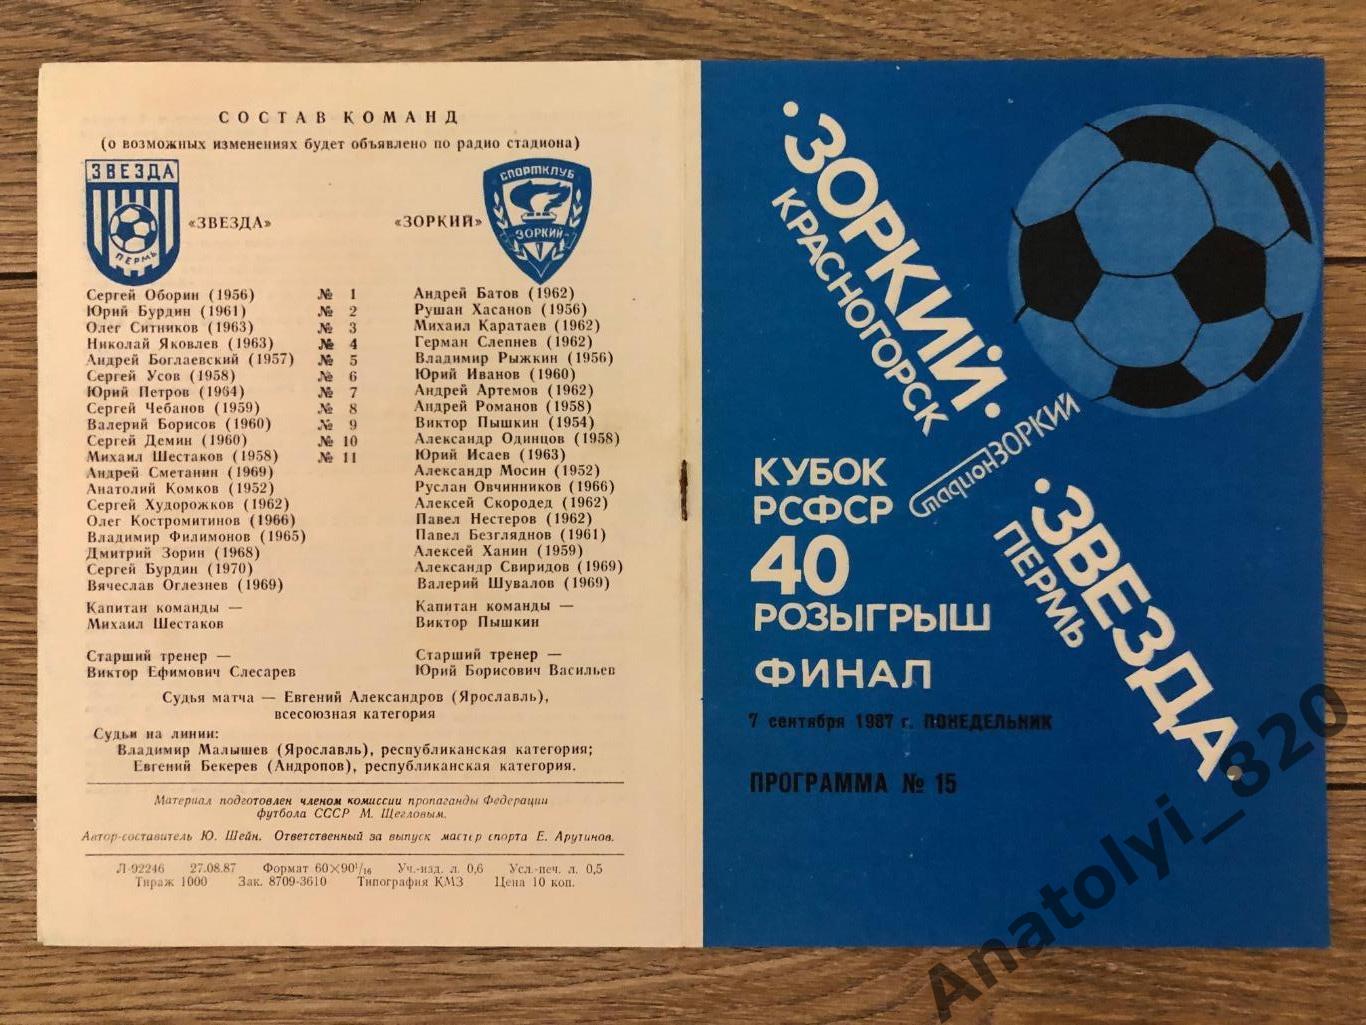 Зоркий Красногорск - Звезда Пермь, 07.09.1987, финал кубка РСФСР